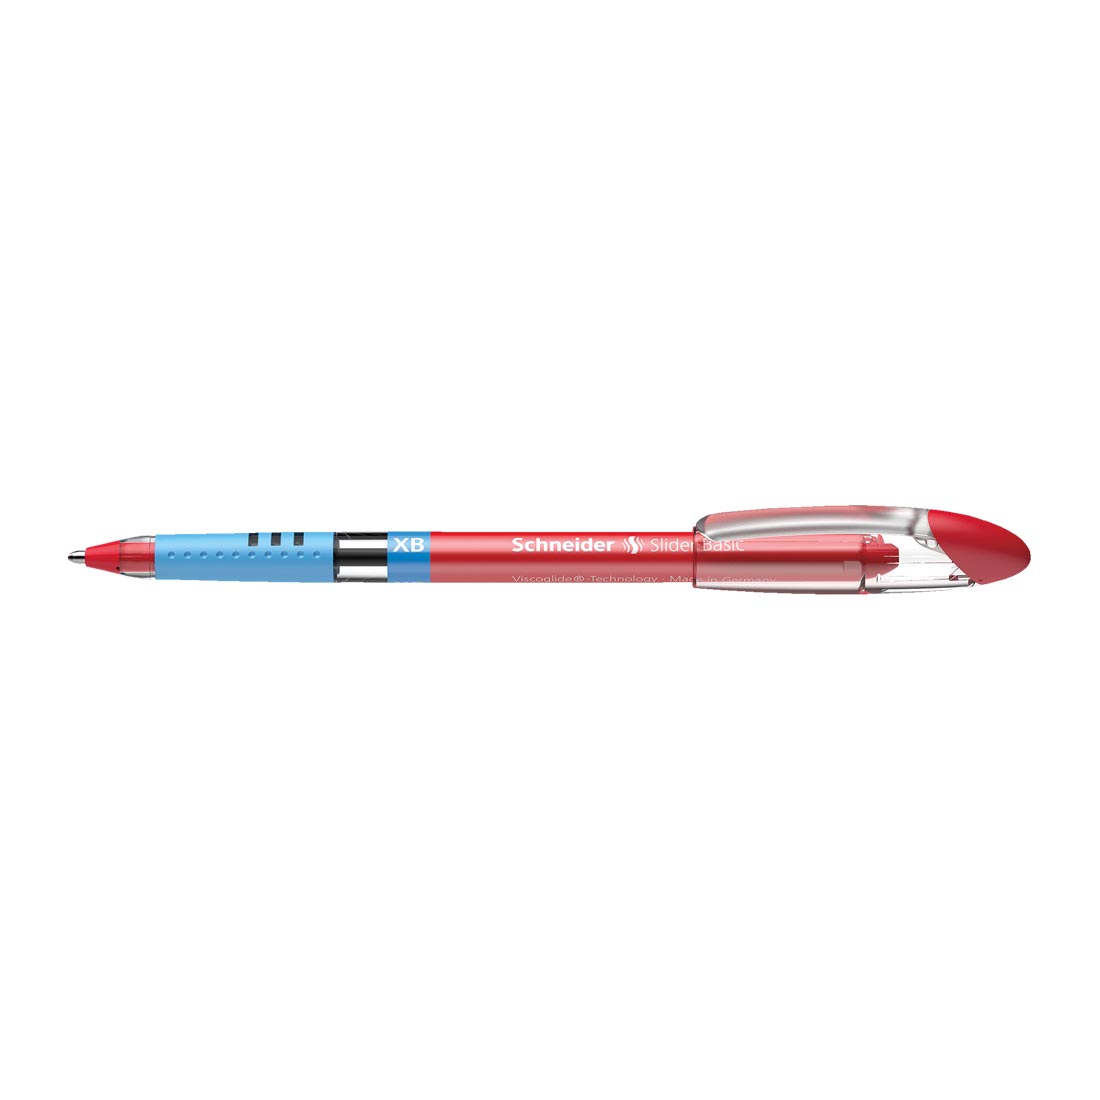 Slider BASIC Ballpoint Pen XB, Box of 10#ink-color_red